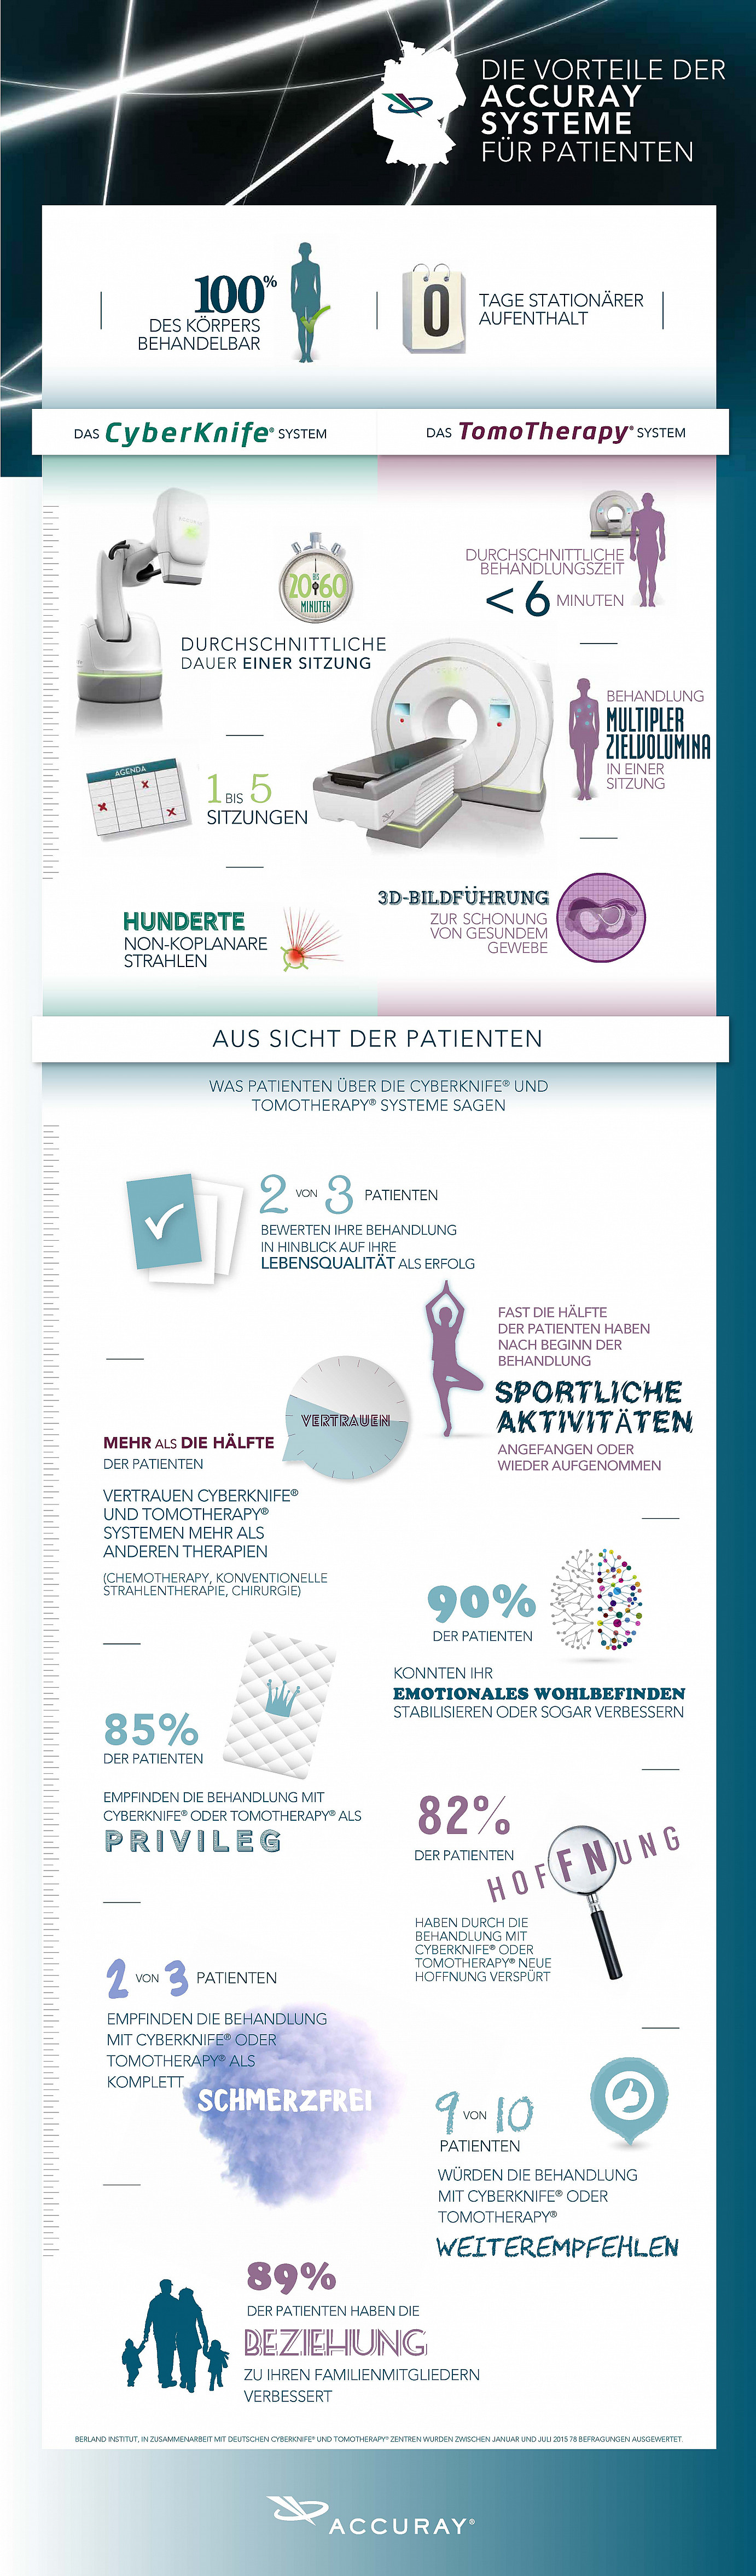 Infografik über die Krebstherapie mit CyberKnife¬Æ und TomoTherapy¬Æ